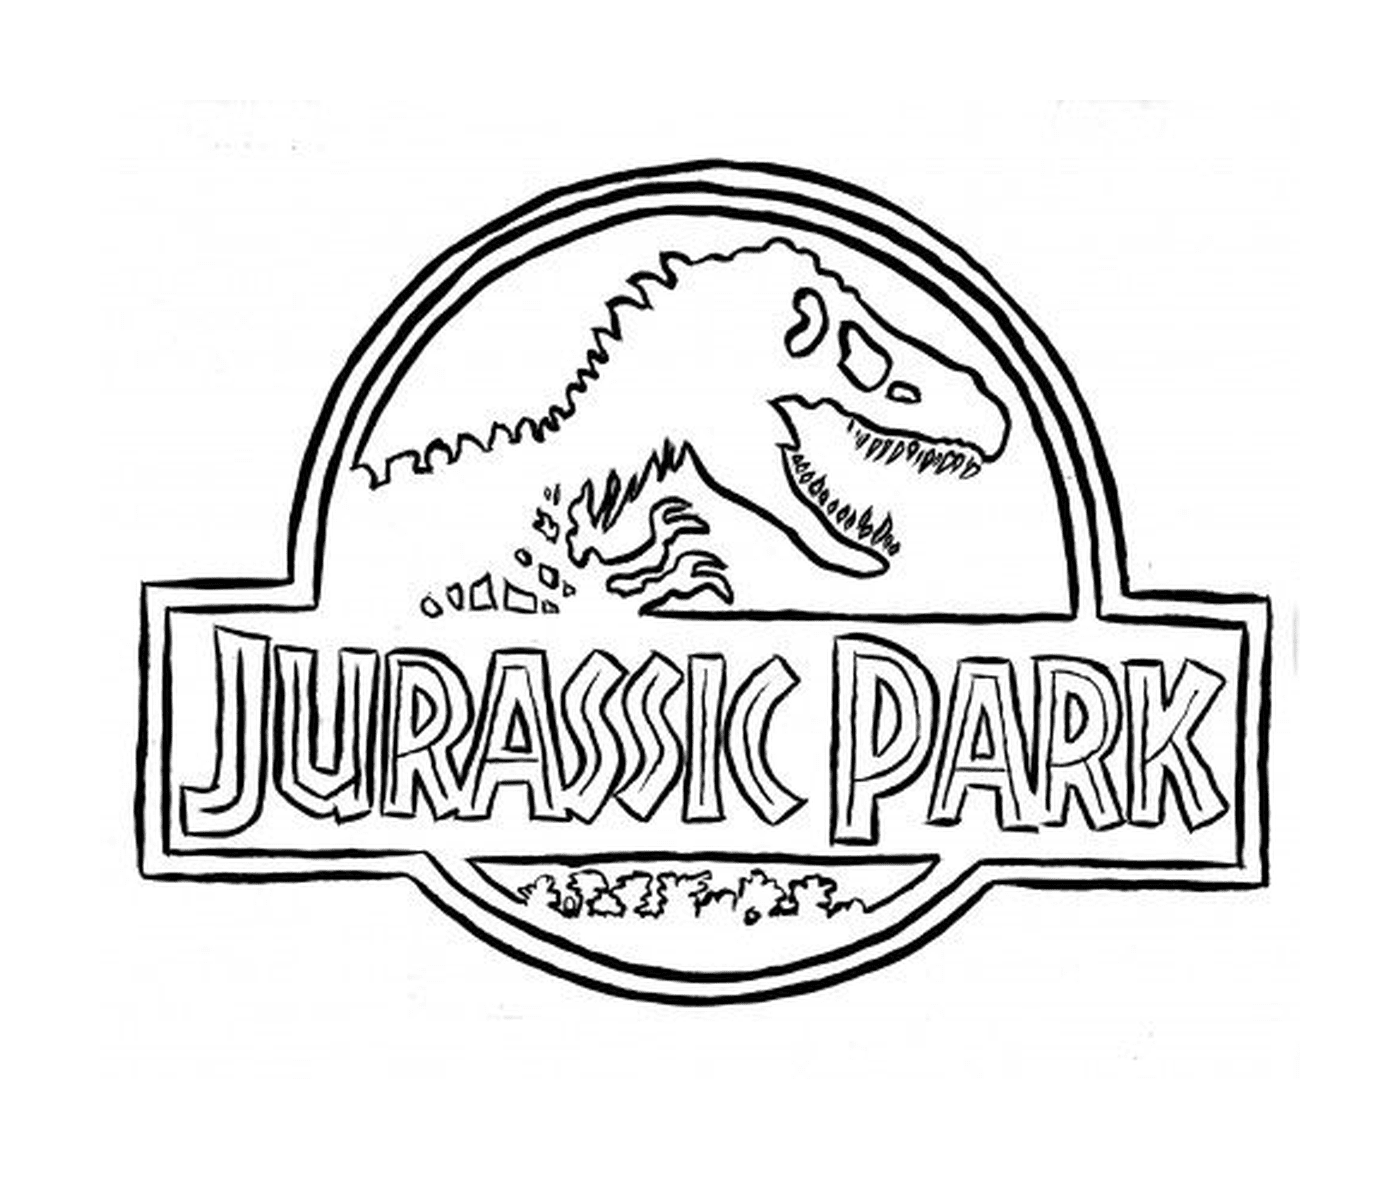   Logo Jurassic Park, symbole mythique 